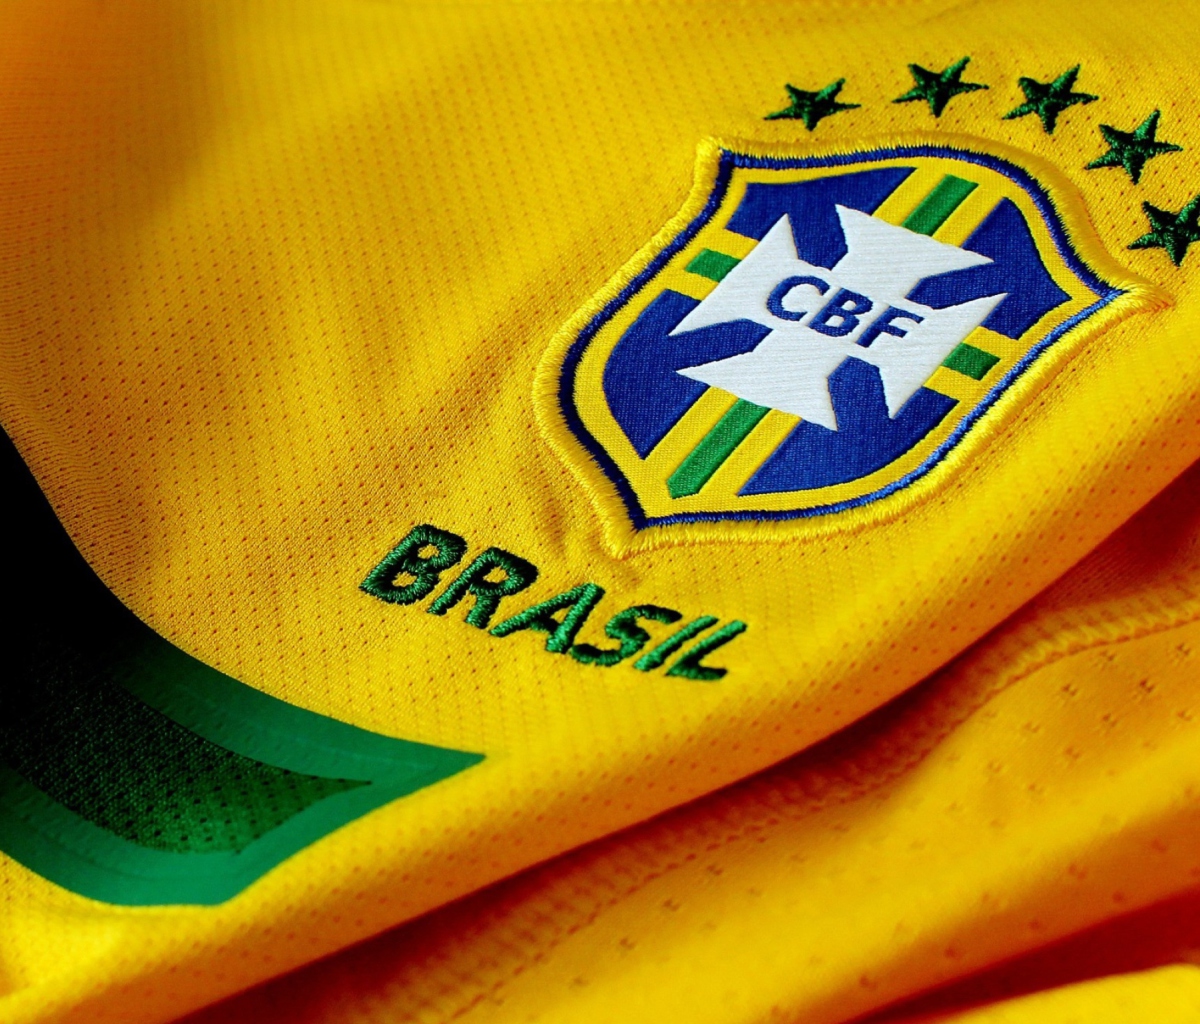 Brazil Football Club wallpaper 1200x1024